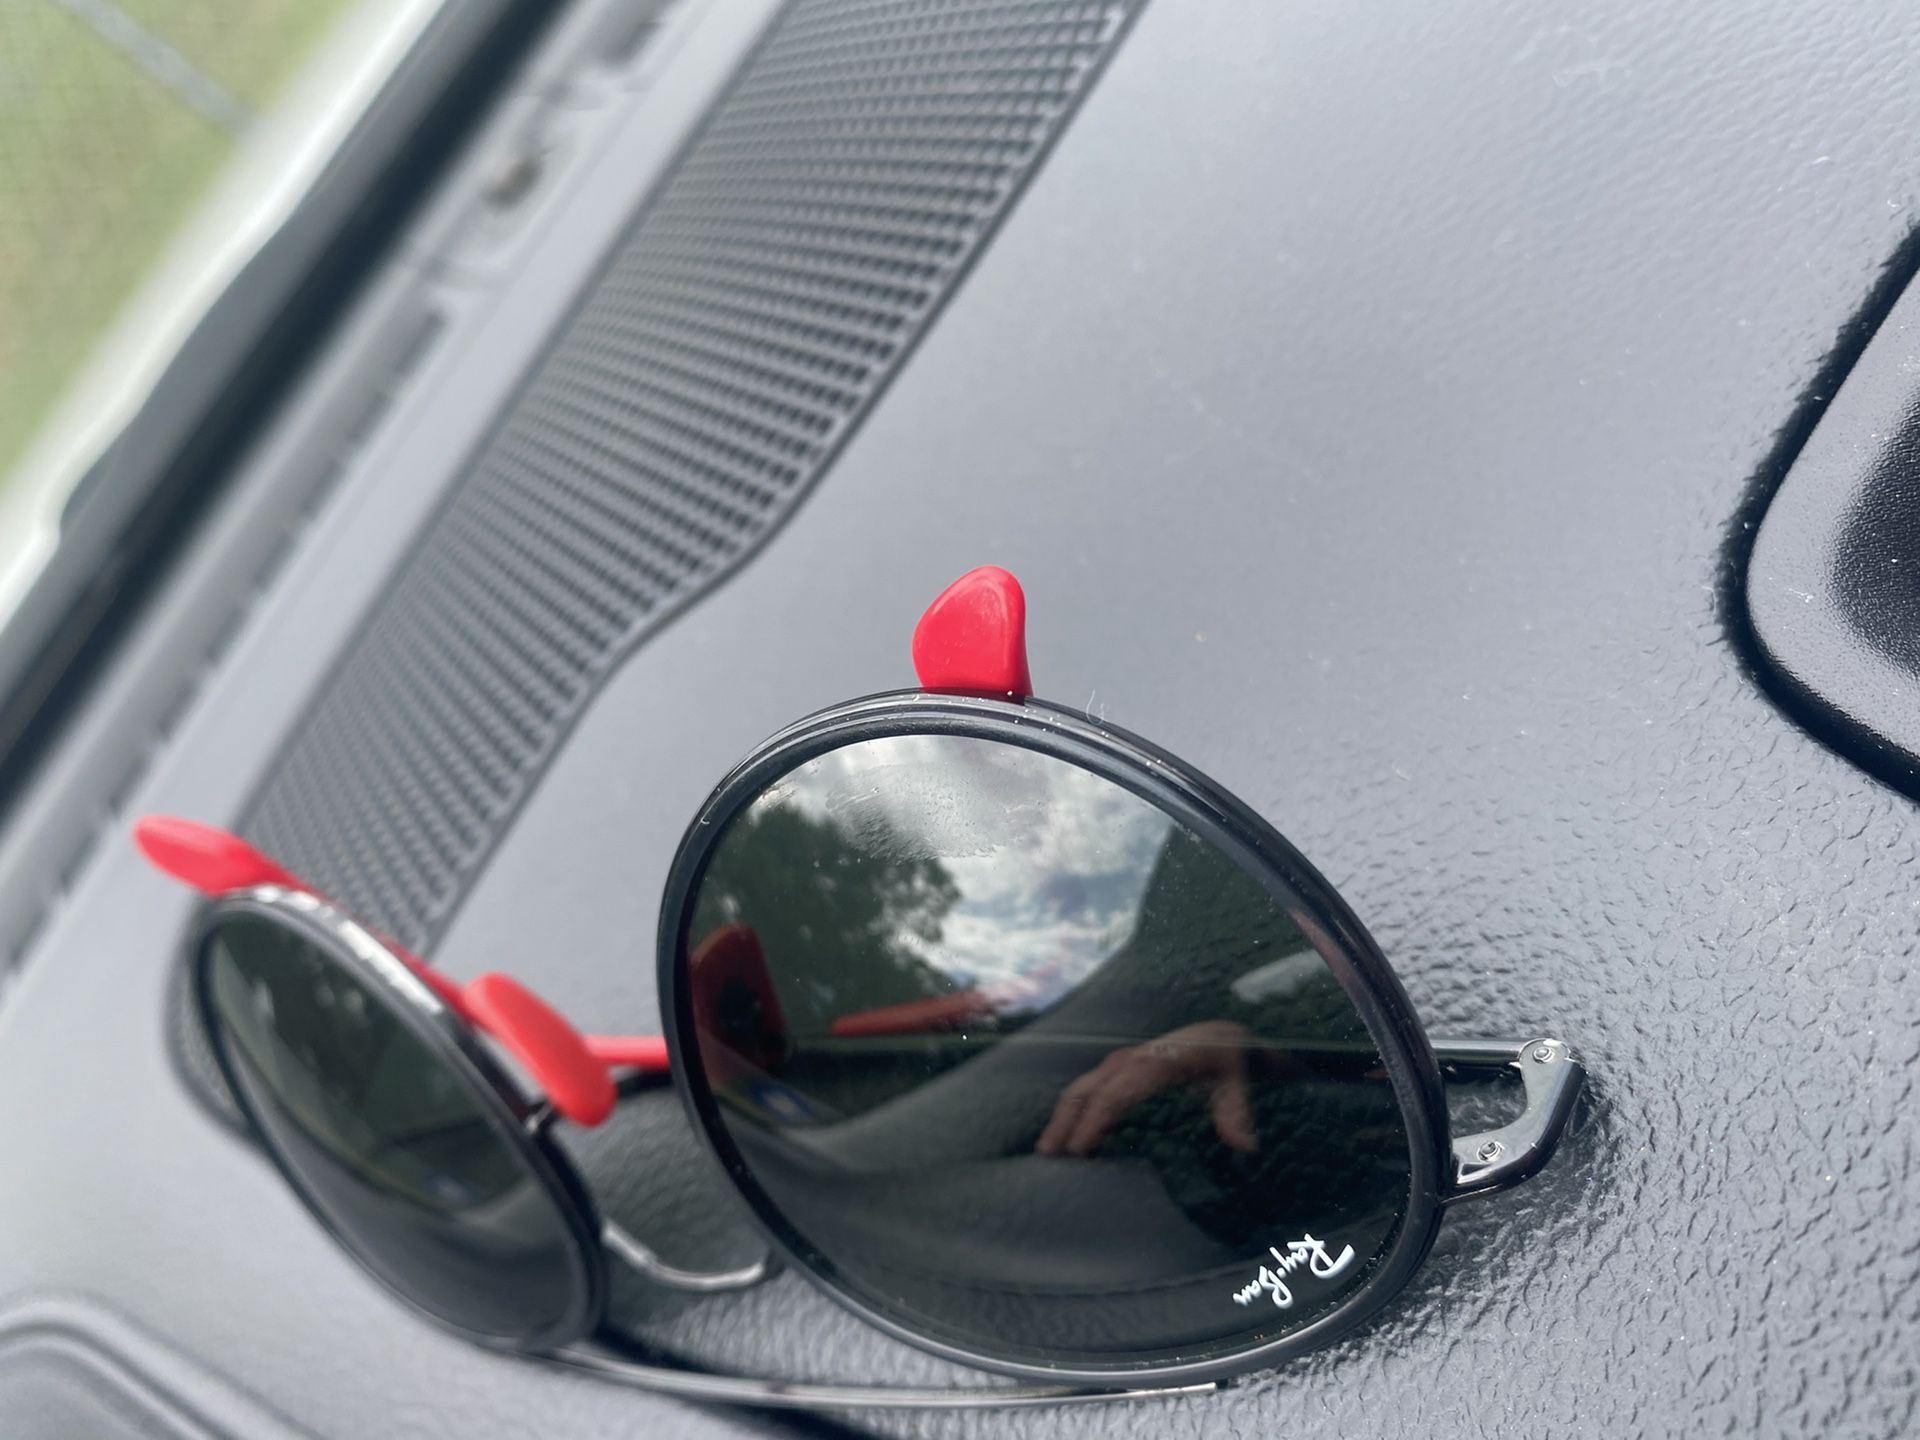 Ray-Ban Ferrari Originals men’s sunglasses